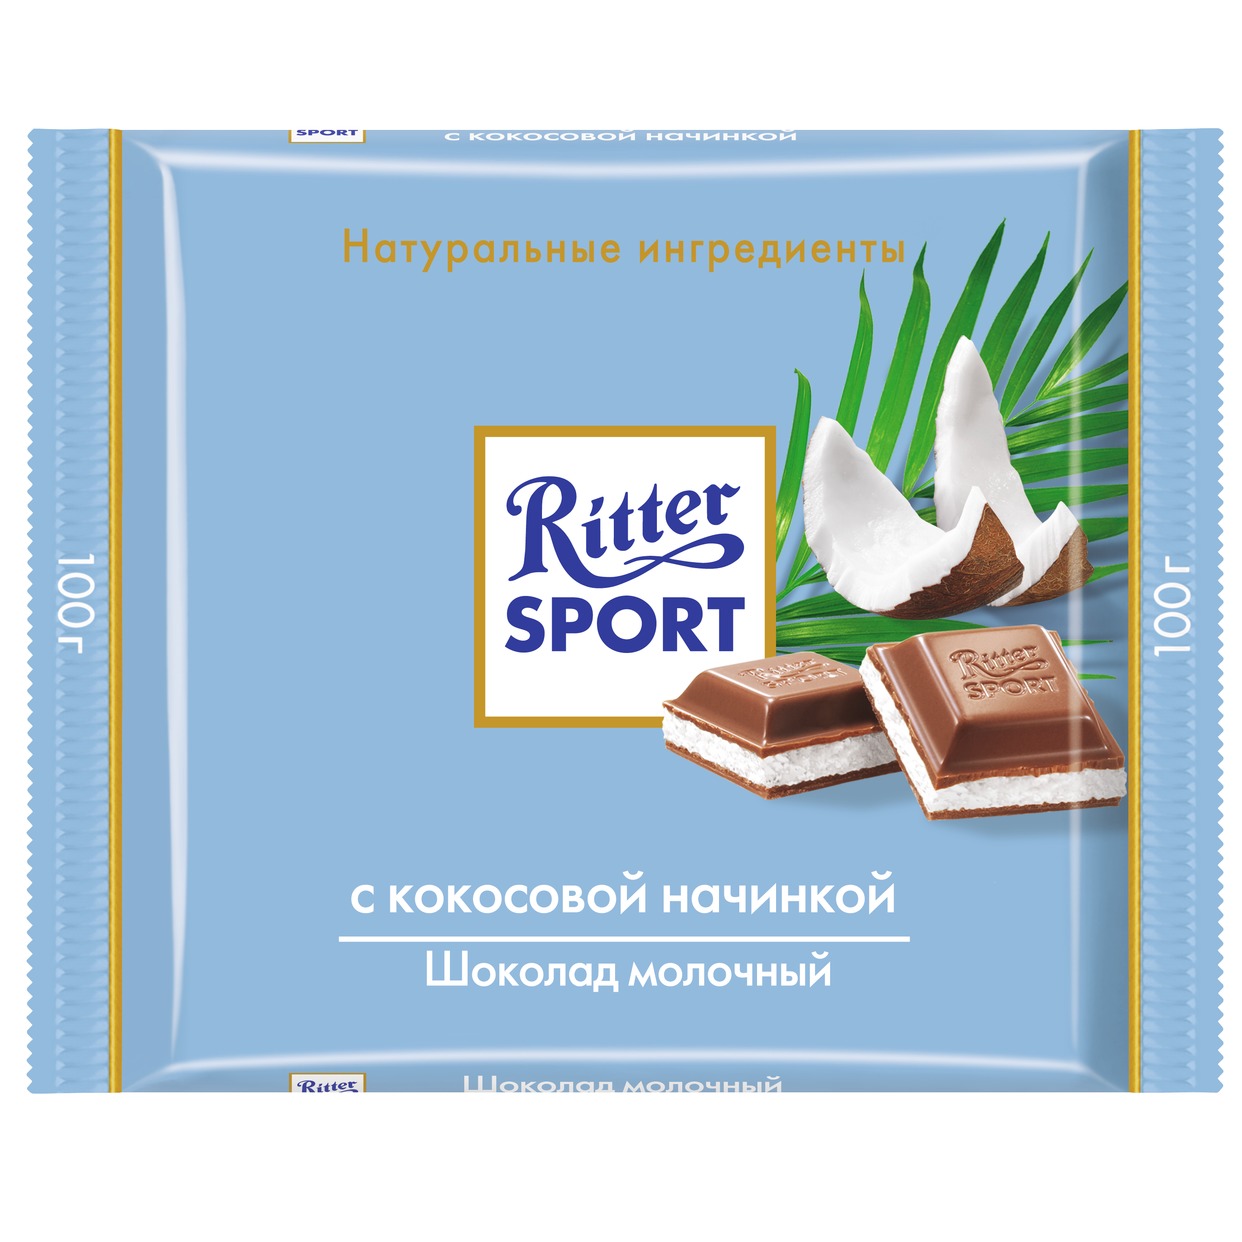 Шоколад Ritter Sport Молочный Кокос 100г по акции в Пятерочке